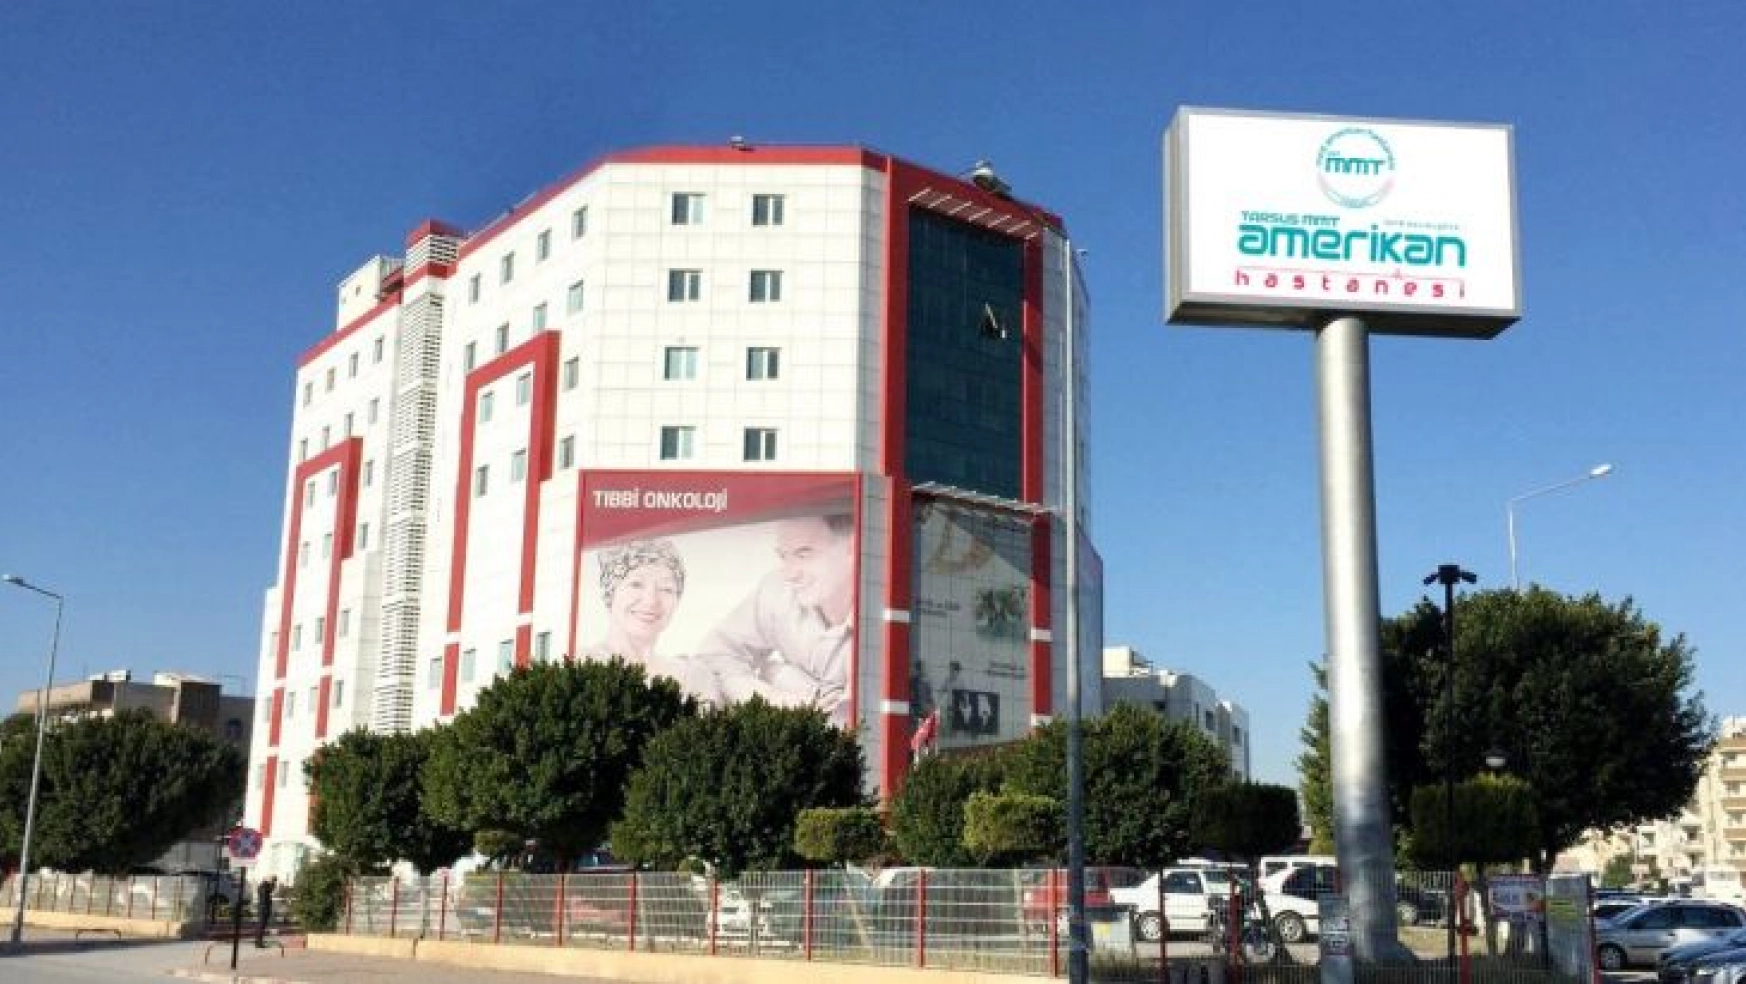 MMT Amerikan hastanesi 3. şubesini Tarsus'ta açtı